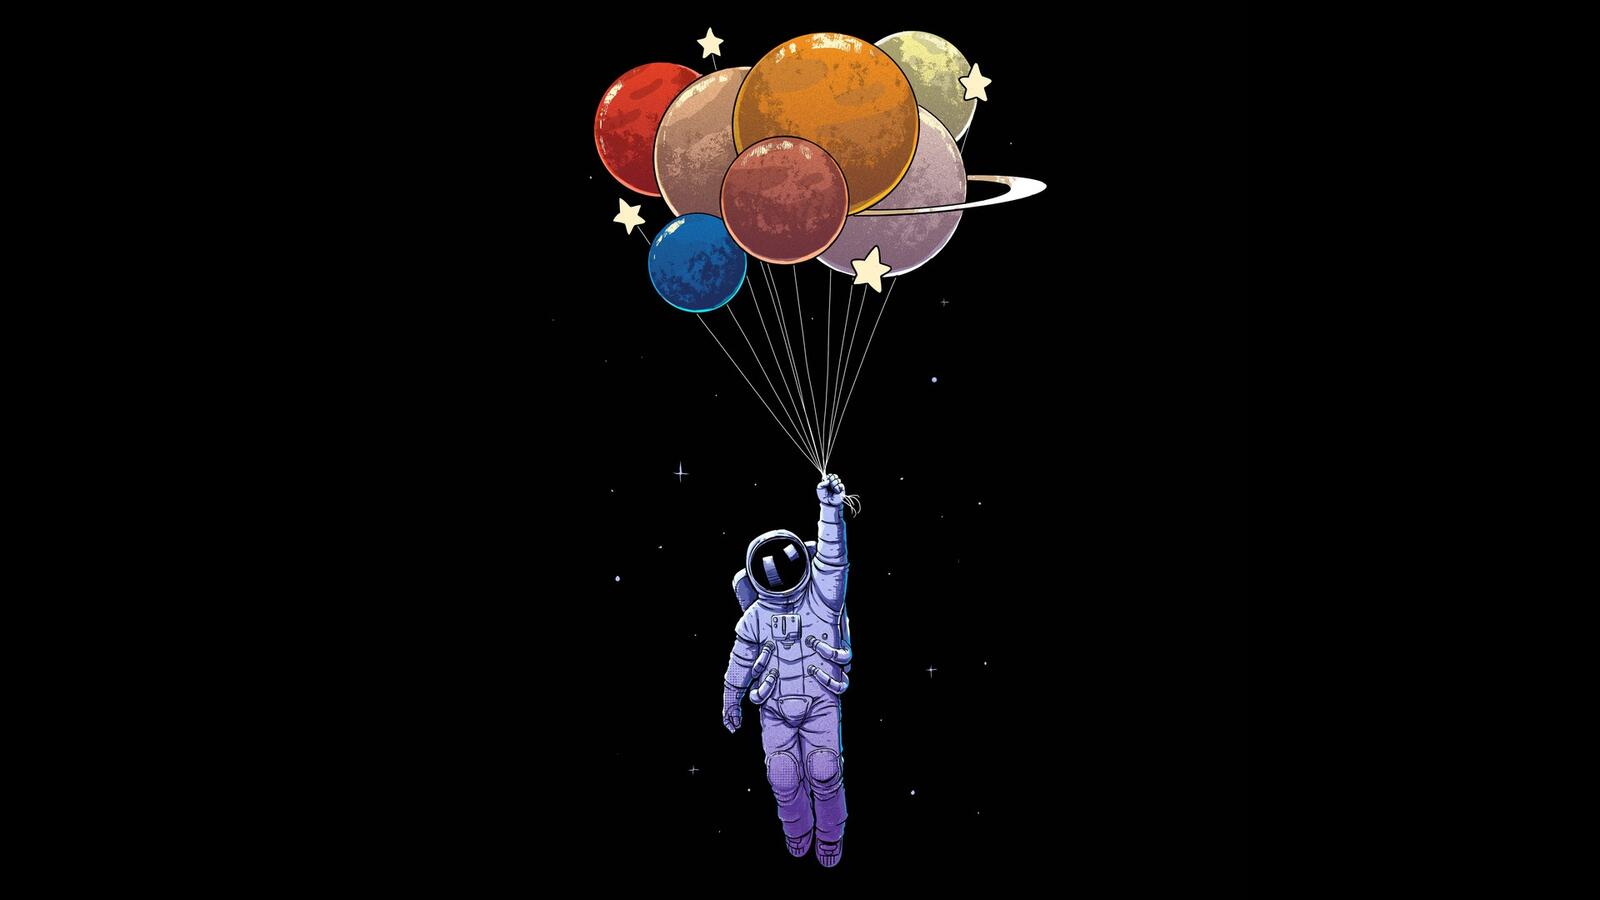 Бесплатное фото Астронавт летит на воздушных шариках